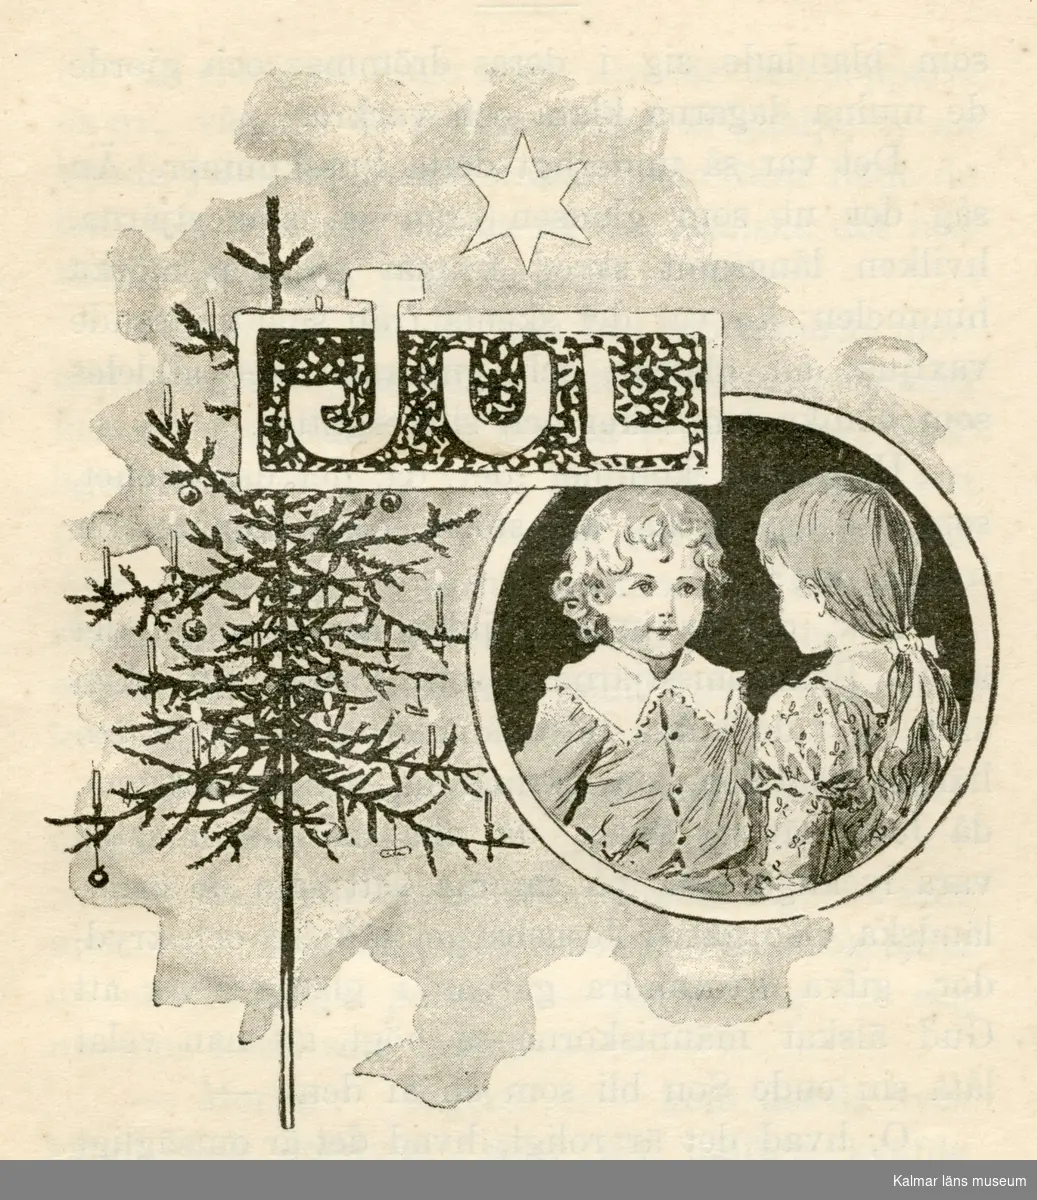 Illustration till Jul. Till höger i en cirkel är en pojke, Gösta, och en flicka, Ellen, avbildade mot en svart botten. De står mitt emot varandra. Gösta till vänster har ljust lockigt hår och är klädd i en skjorta med ljus krage. Ellen har ett band i håret och är klädd i en blus eller klänning med vit krage. Till vänster står en gran som är dekorerad med julgransljus och äpplen. Över dem syns en stjärna.